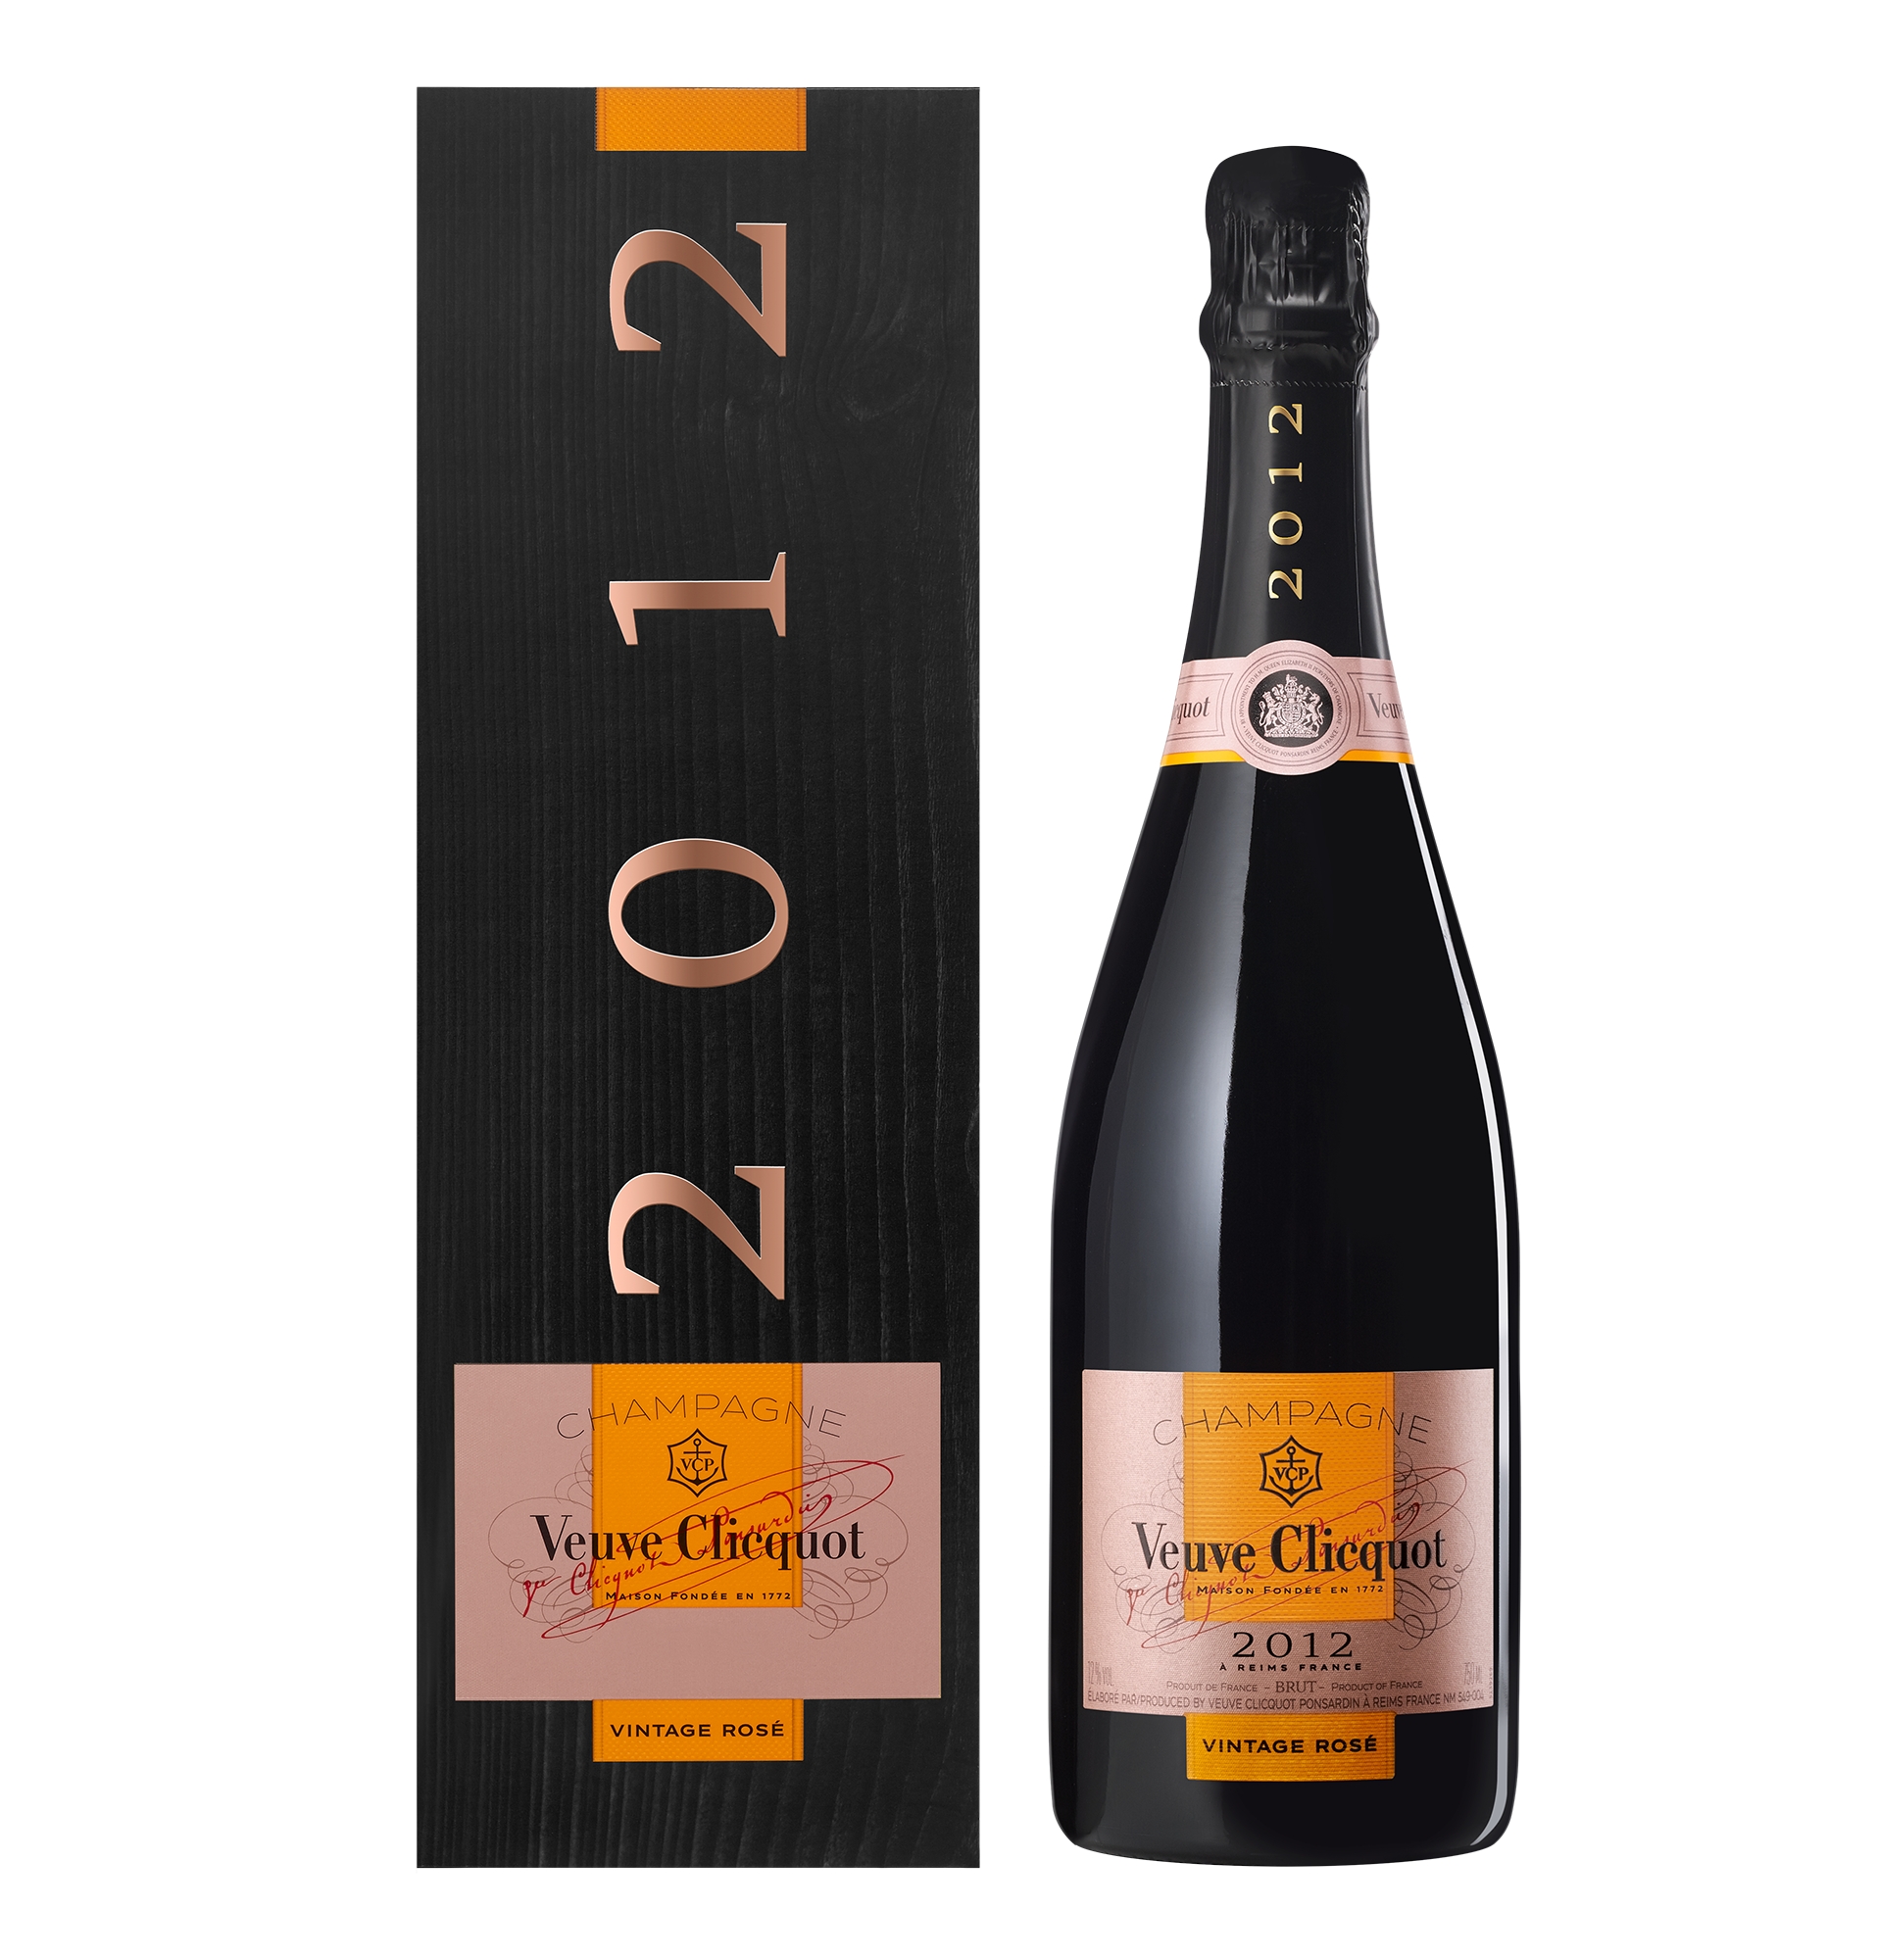 VINTAGE VEUVE CLICQUOT By Louis Vuitton Champagne Travel Case La Grande  Dame $250.00 - PicClick